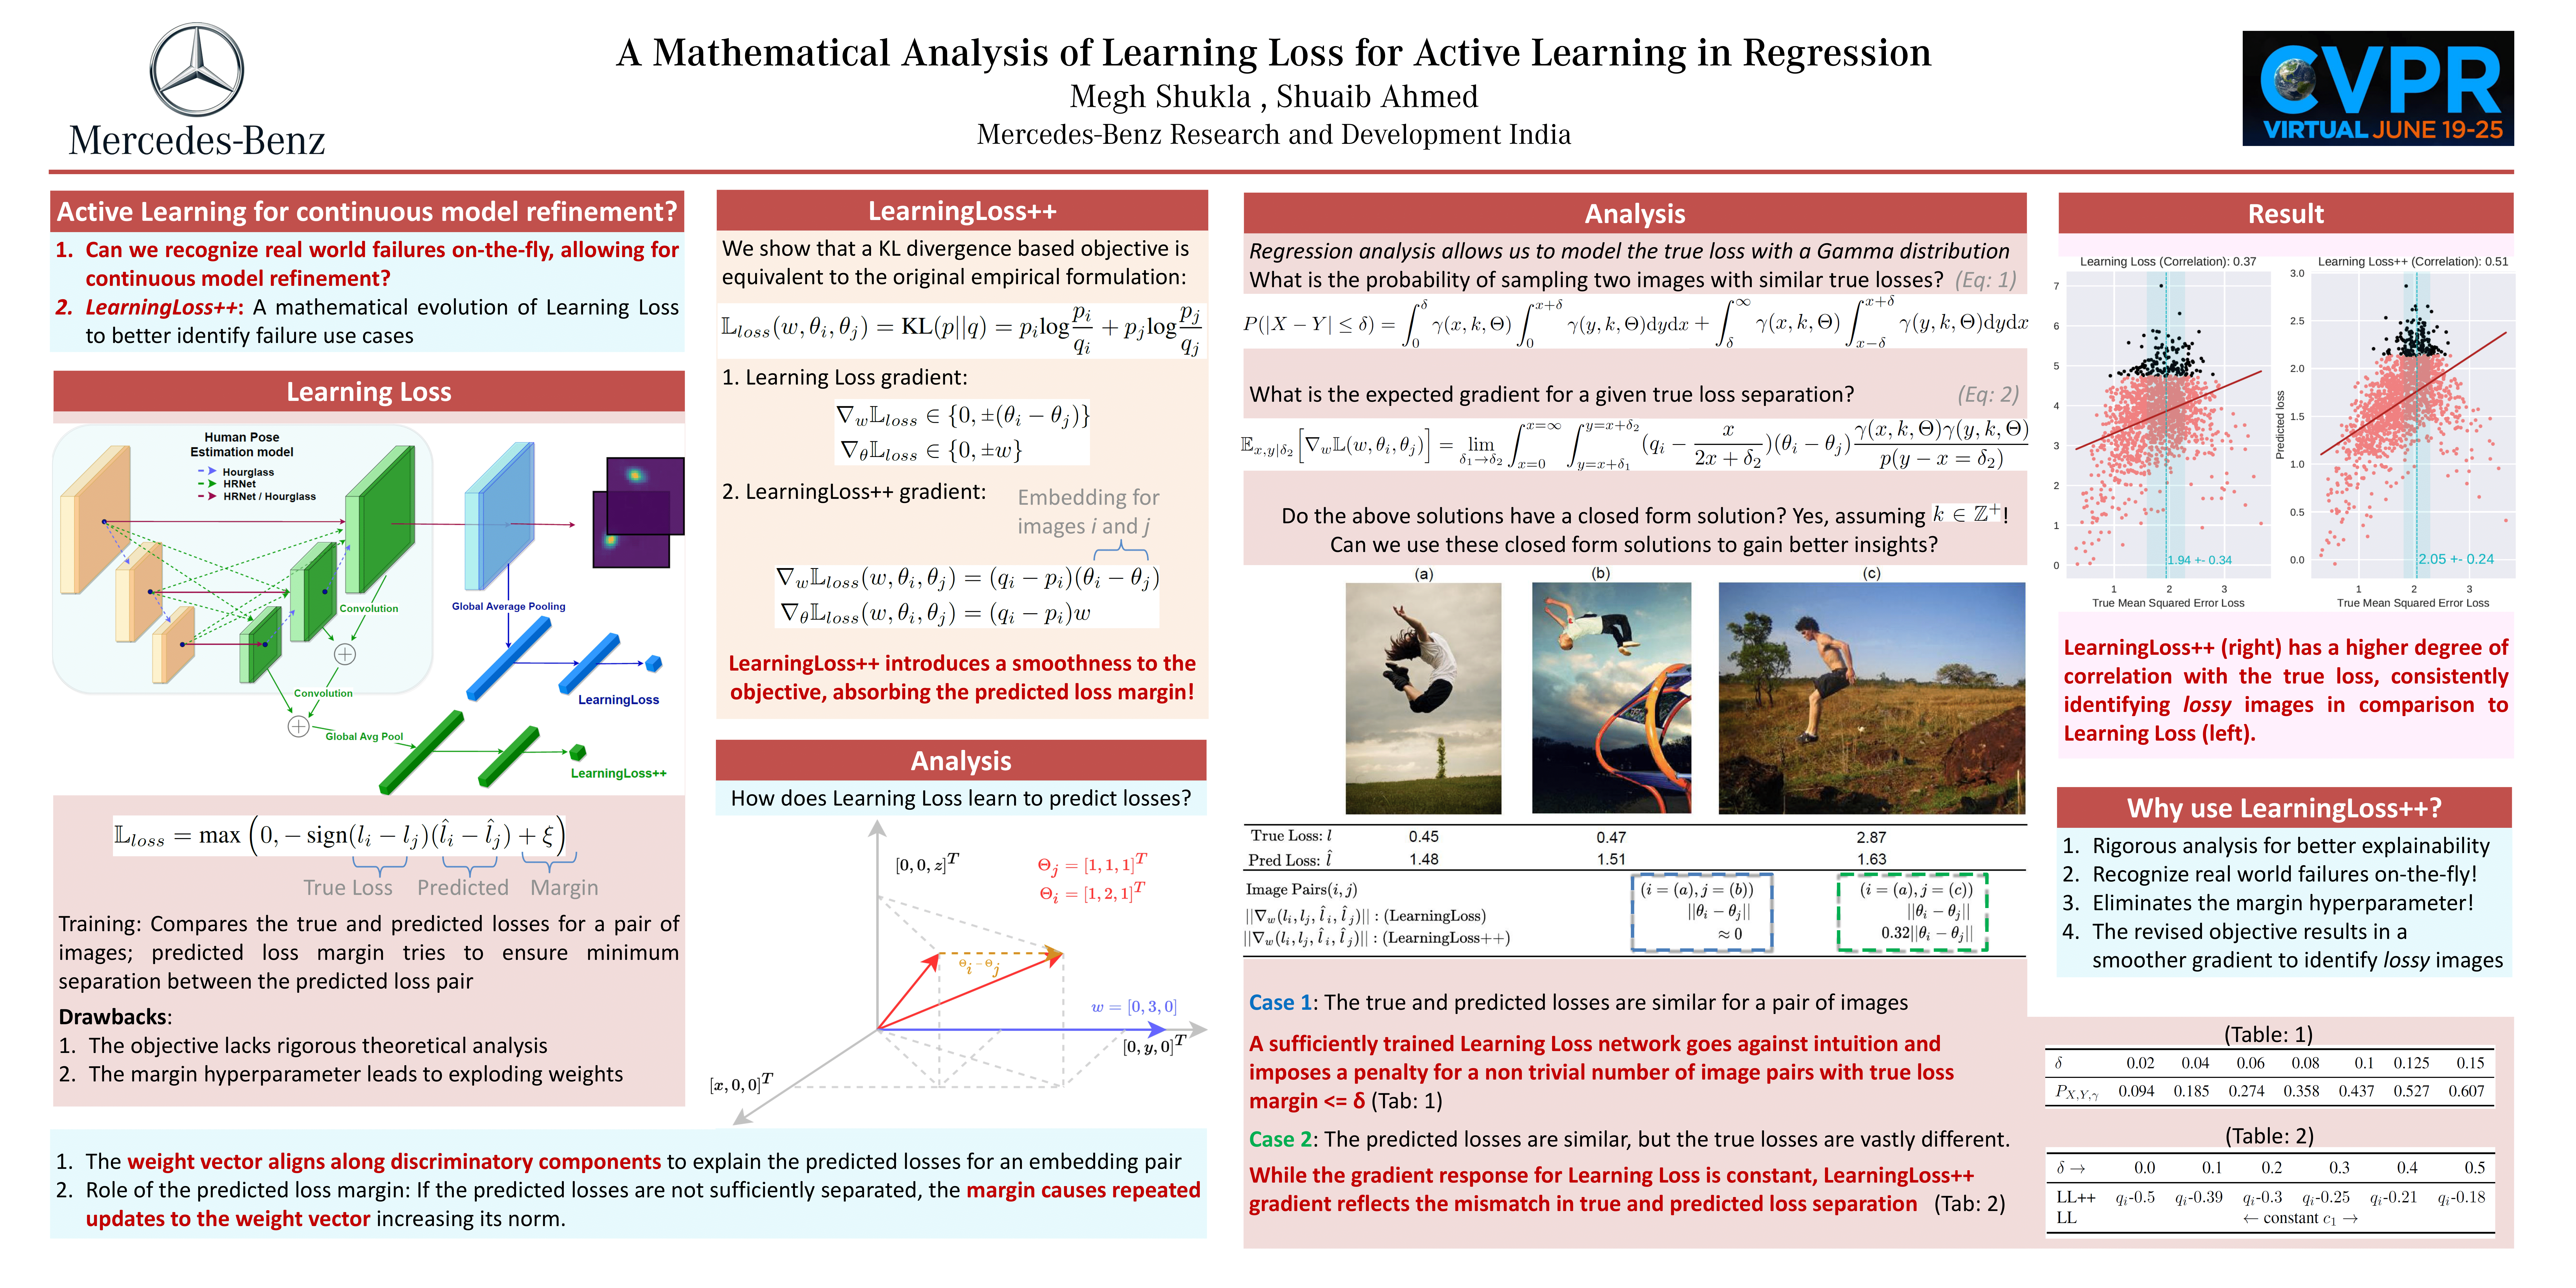 MathAnalysisLearningLoss_poster